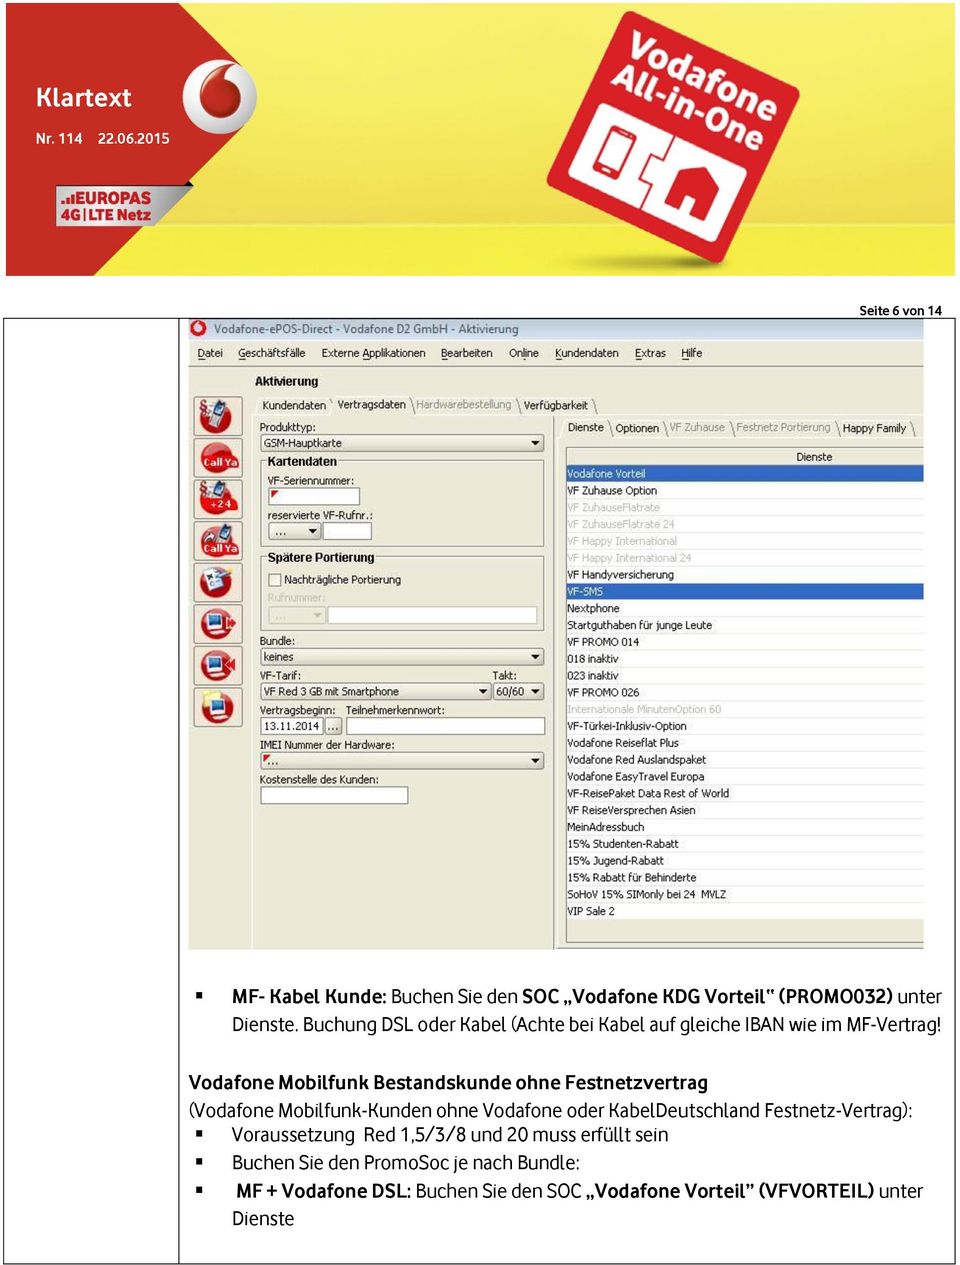 Vodafone Mobilfunk Bestandskunde ohne Festnetzvertrag (Vodafone Mobilfunk-Kunden ohne Vodafone oder KabelDeutschland